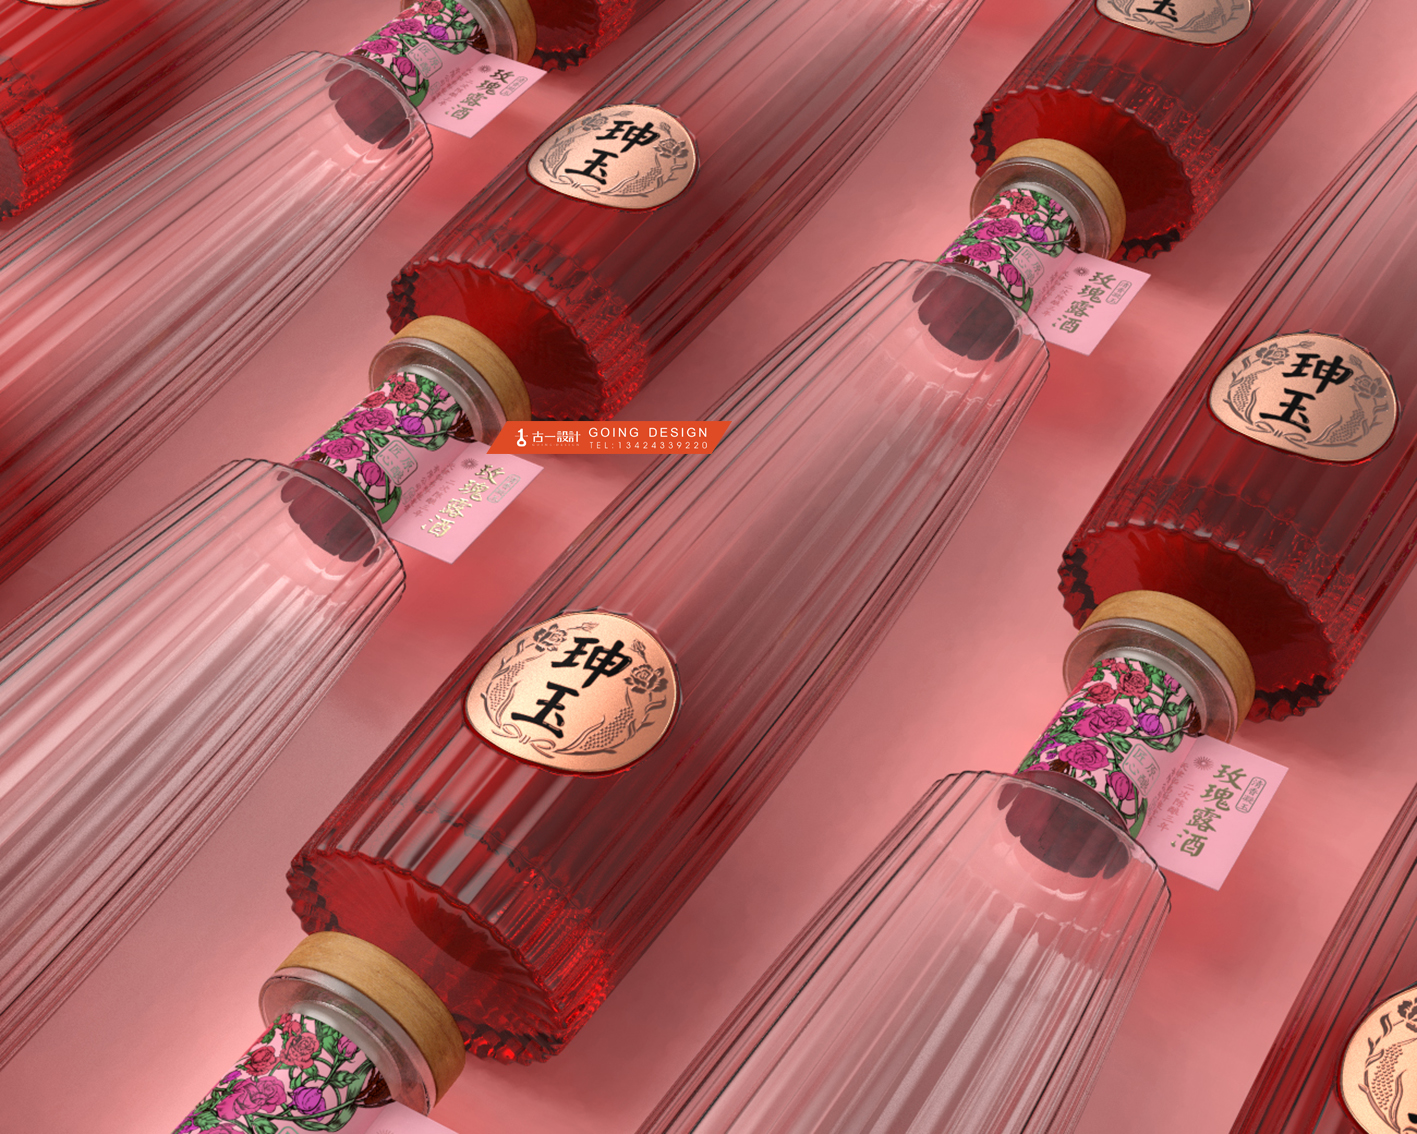 珅玉玫瑰露酒包装设计，天津名酒玫瑰露酒瓶型设计包装设计